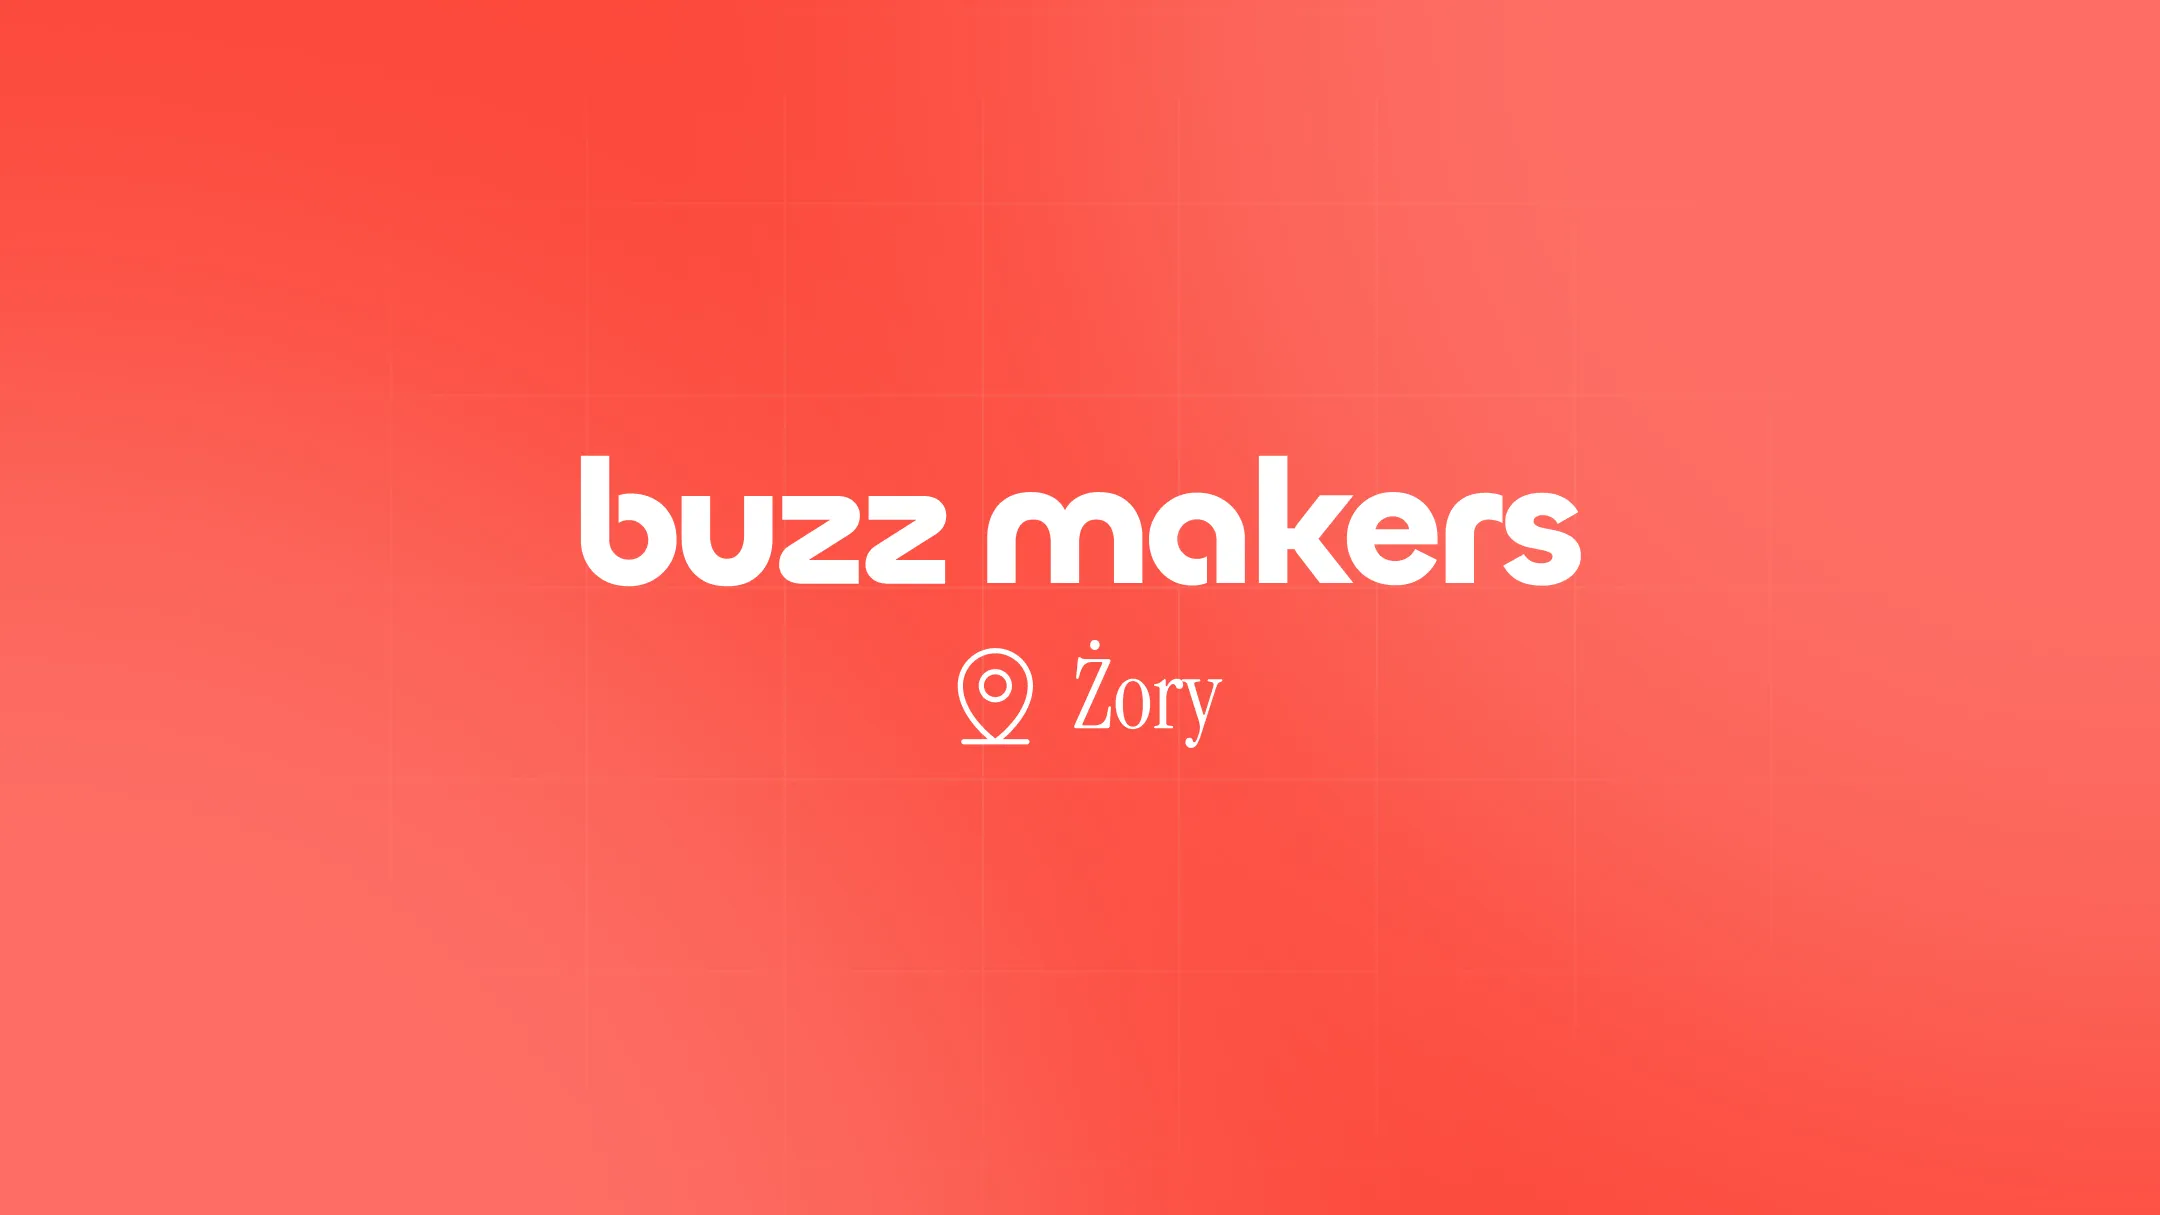 Agencja marketingowa Żory — zrób szum wokół Twojej marki razem z Buzz Makers